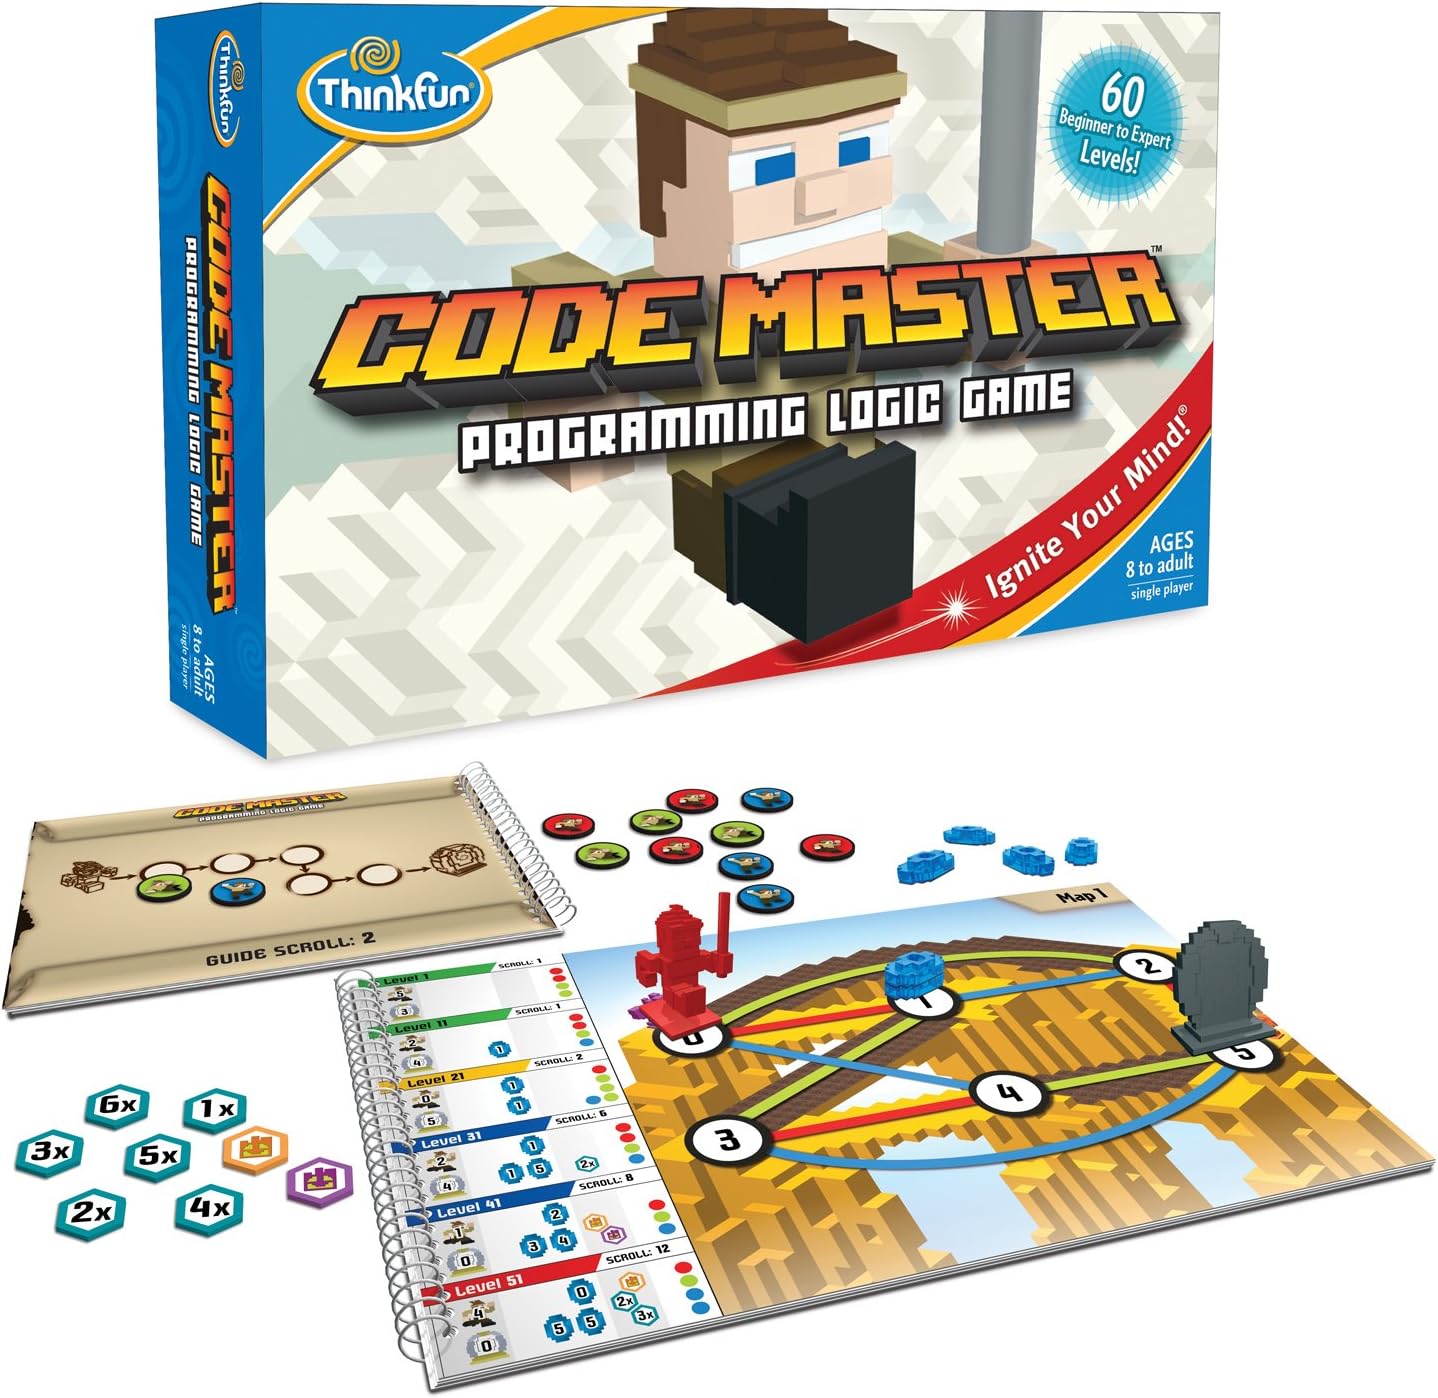 Think Fun-Code Master - Programming Logic Game-01950-Legacy Toys